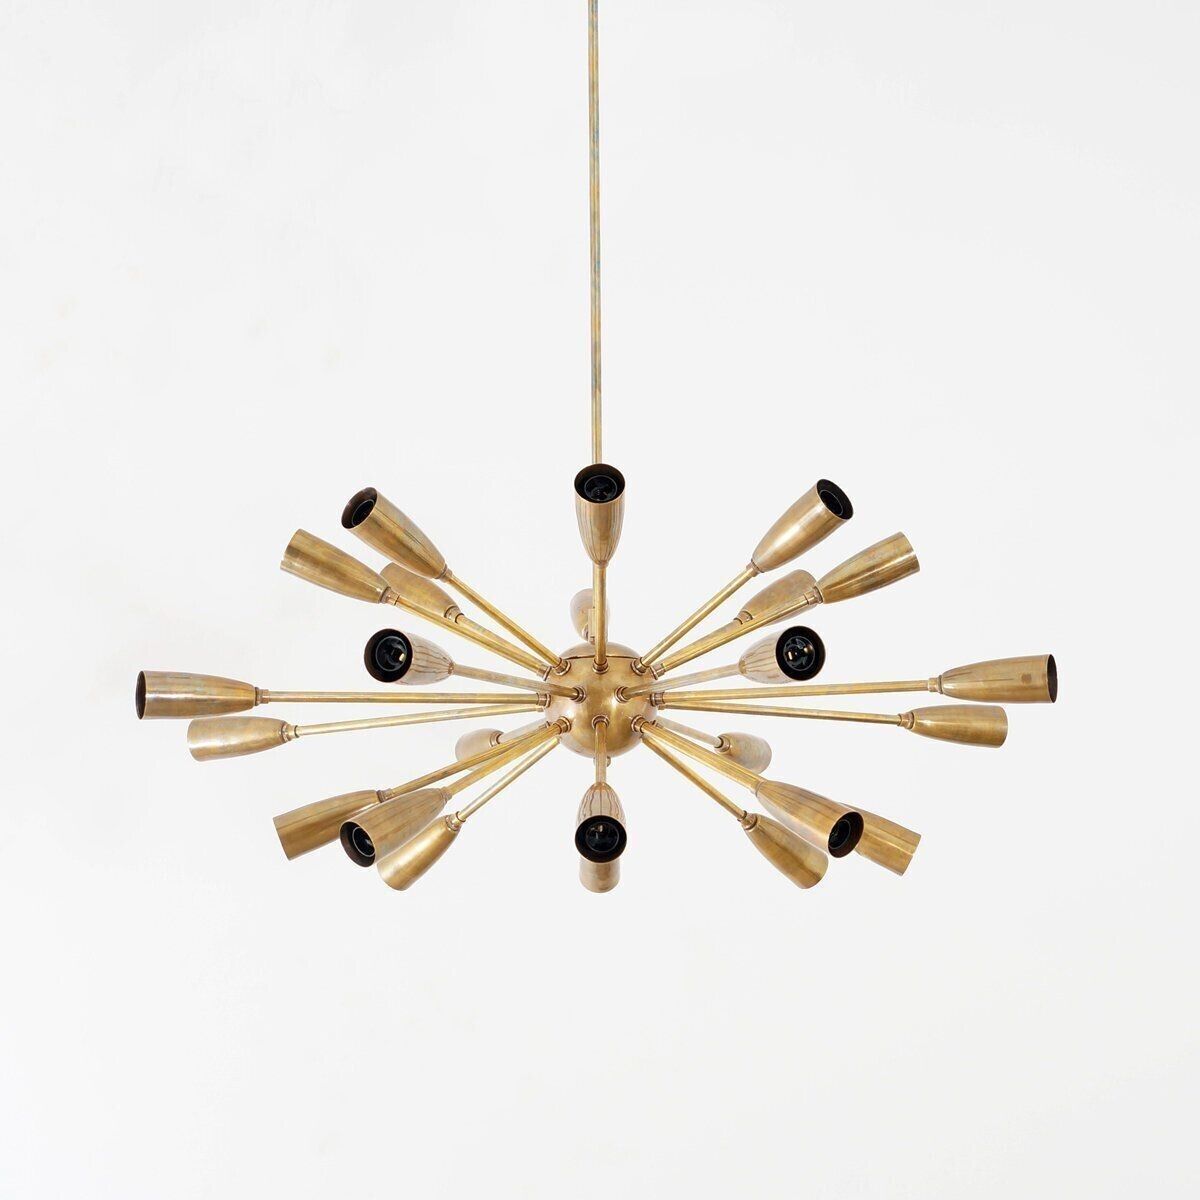 Mid Century Modern Raw Brass Stilnovo Inspired Sputnik Chandelier Ceiling Light - Global Lights Hub